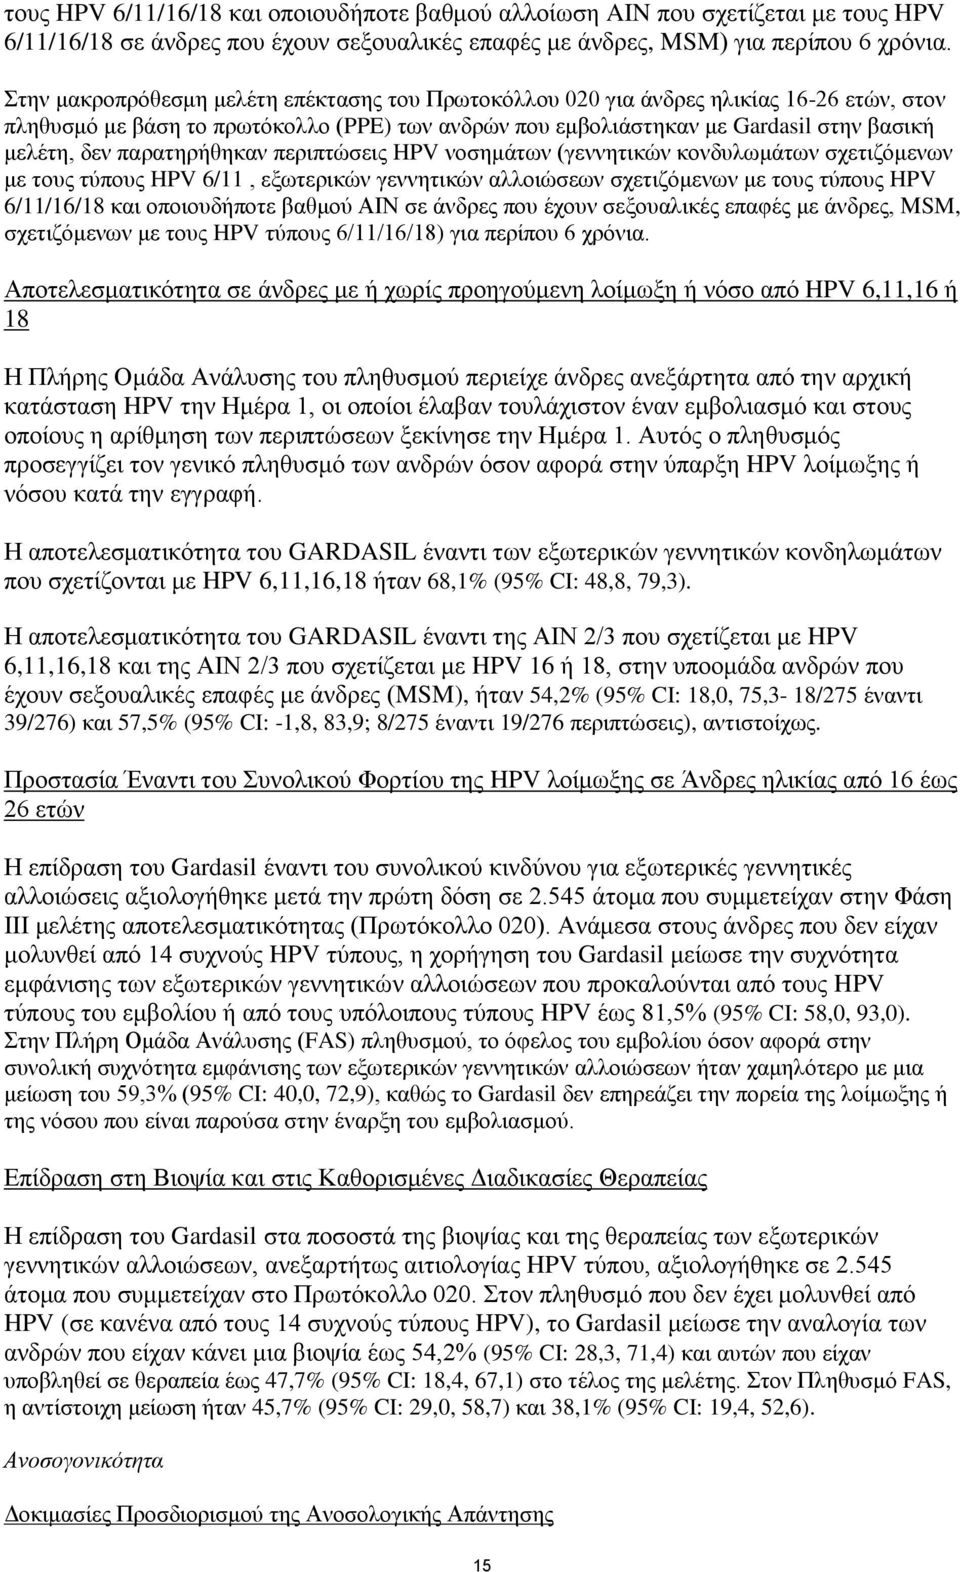 παρατηρήθηκαν περιπτώσεις HPV νοσημάτων (γεννητικών κονδυλωμάτων σχετιζόμενων με τους τύπους HPV 6/11, εξωτερικών γεννητικών αλλοιώσεων σχετιζόμενων με τους τύπους HPV 6/11/16/18 και οποιουδήποτε